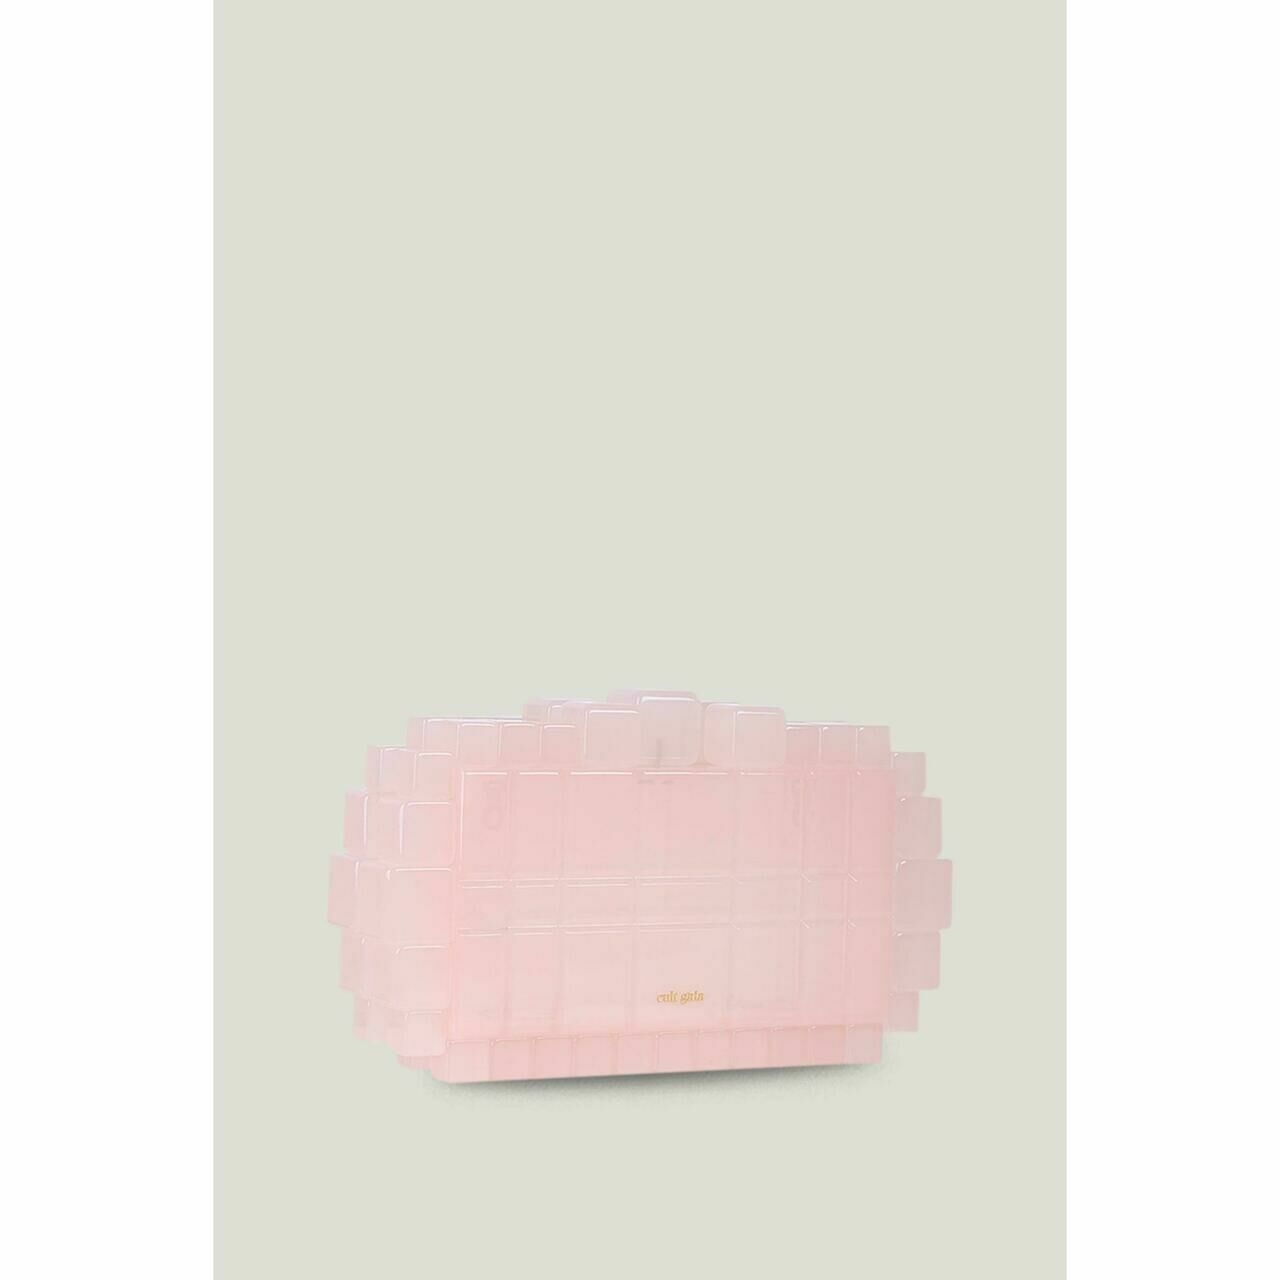 Cult gaia Pink Shoulder Bag